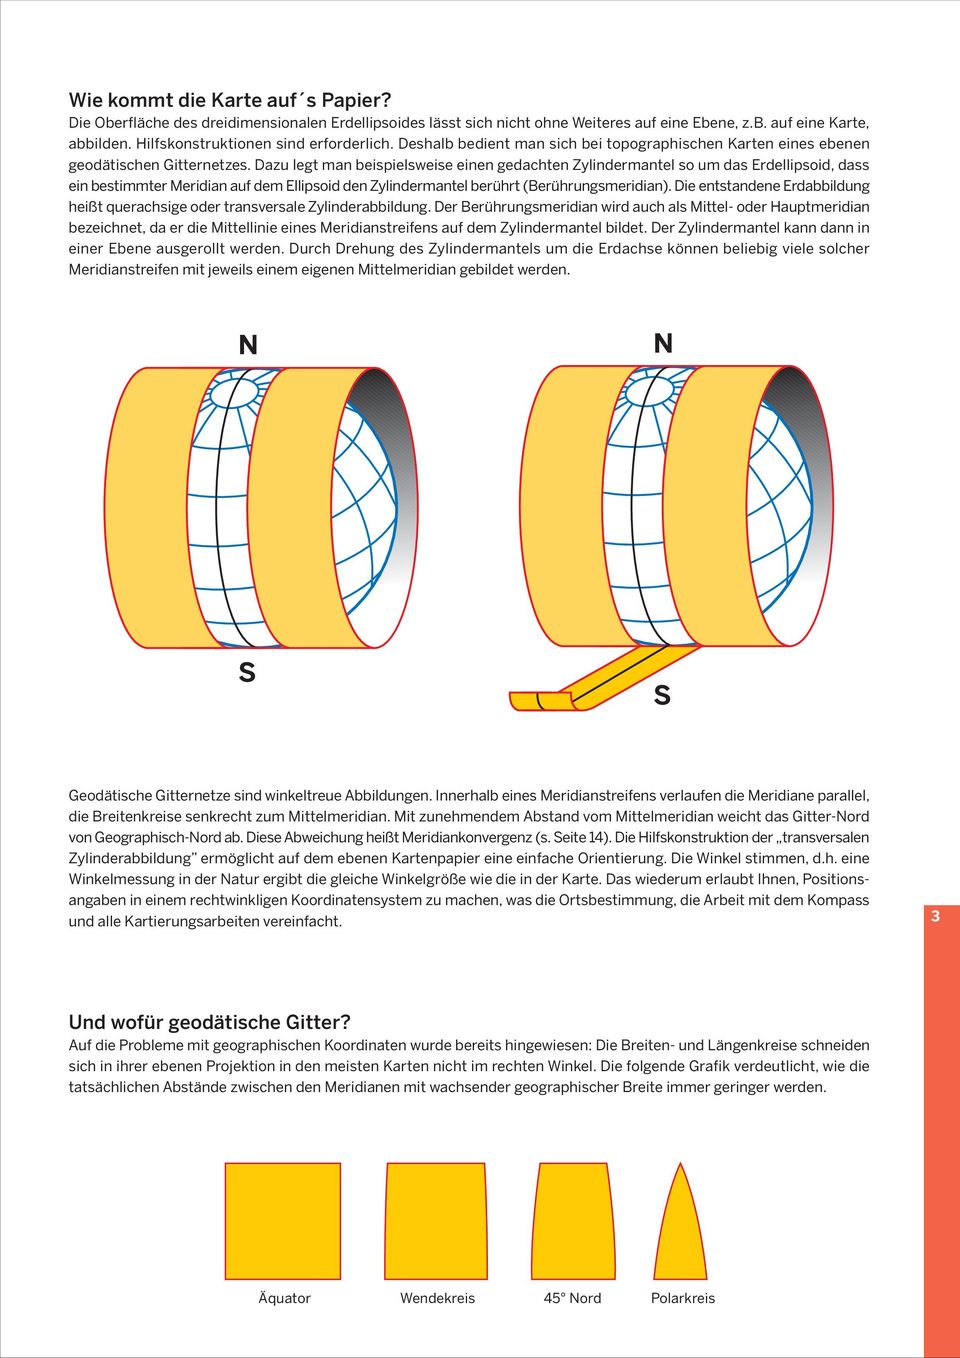 Dazu legt man beispielsweise einen gedachten Zylindermantel so um das Erdellipsoid, dass ein bestimmter Meridian auf dem Ellipsoid den Zylindermantel berührt (Berührungsmeridian).